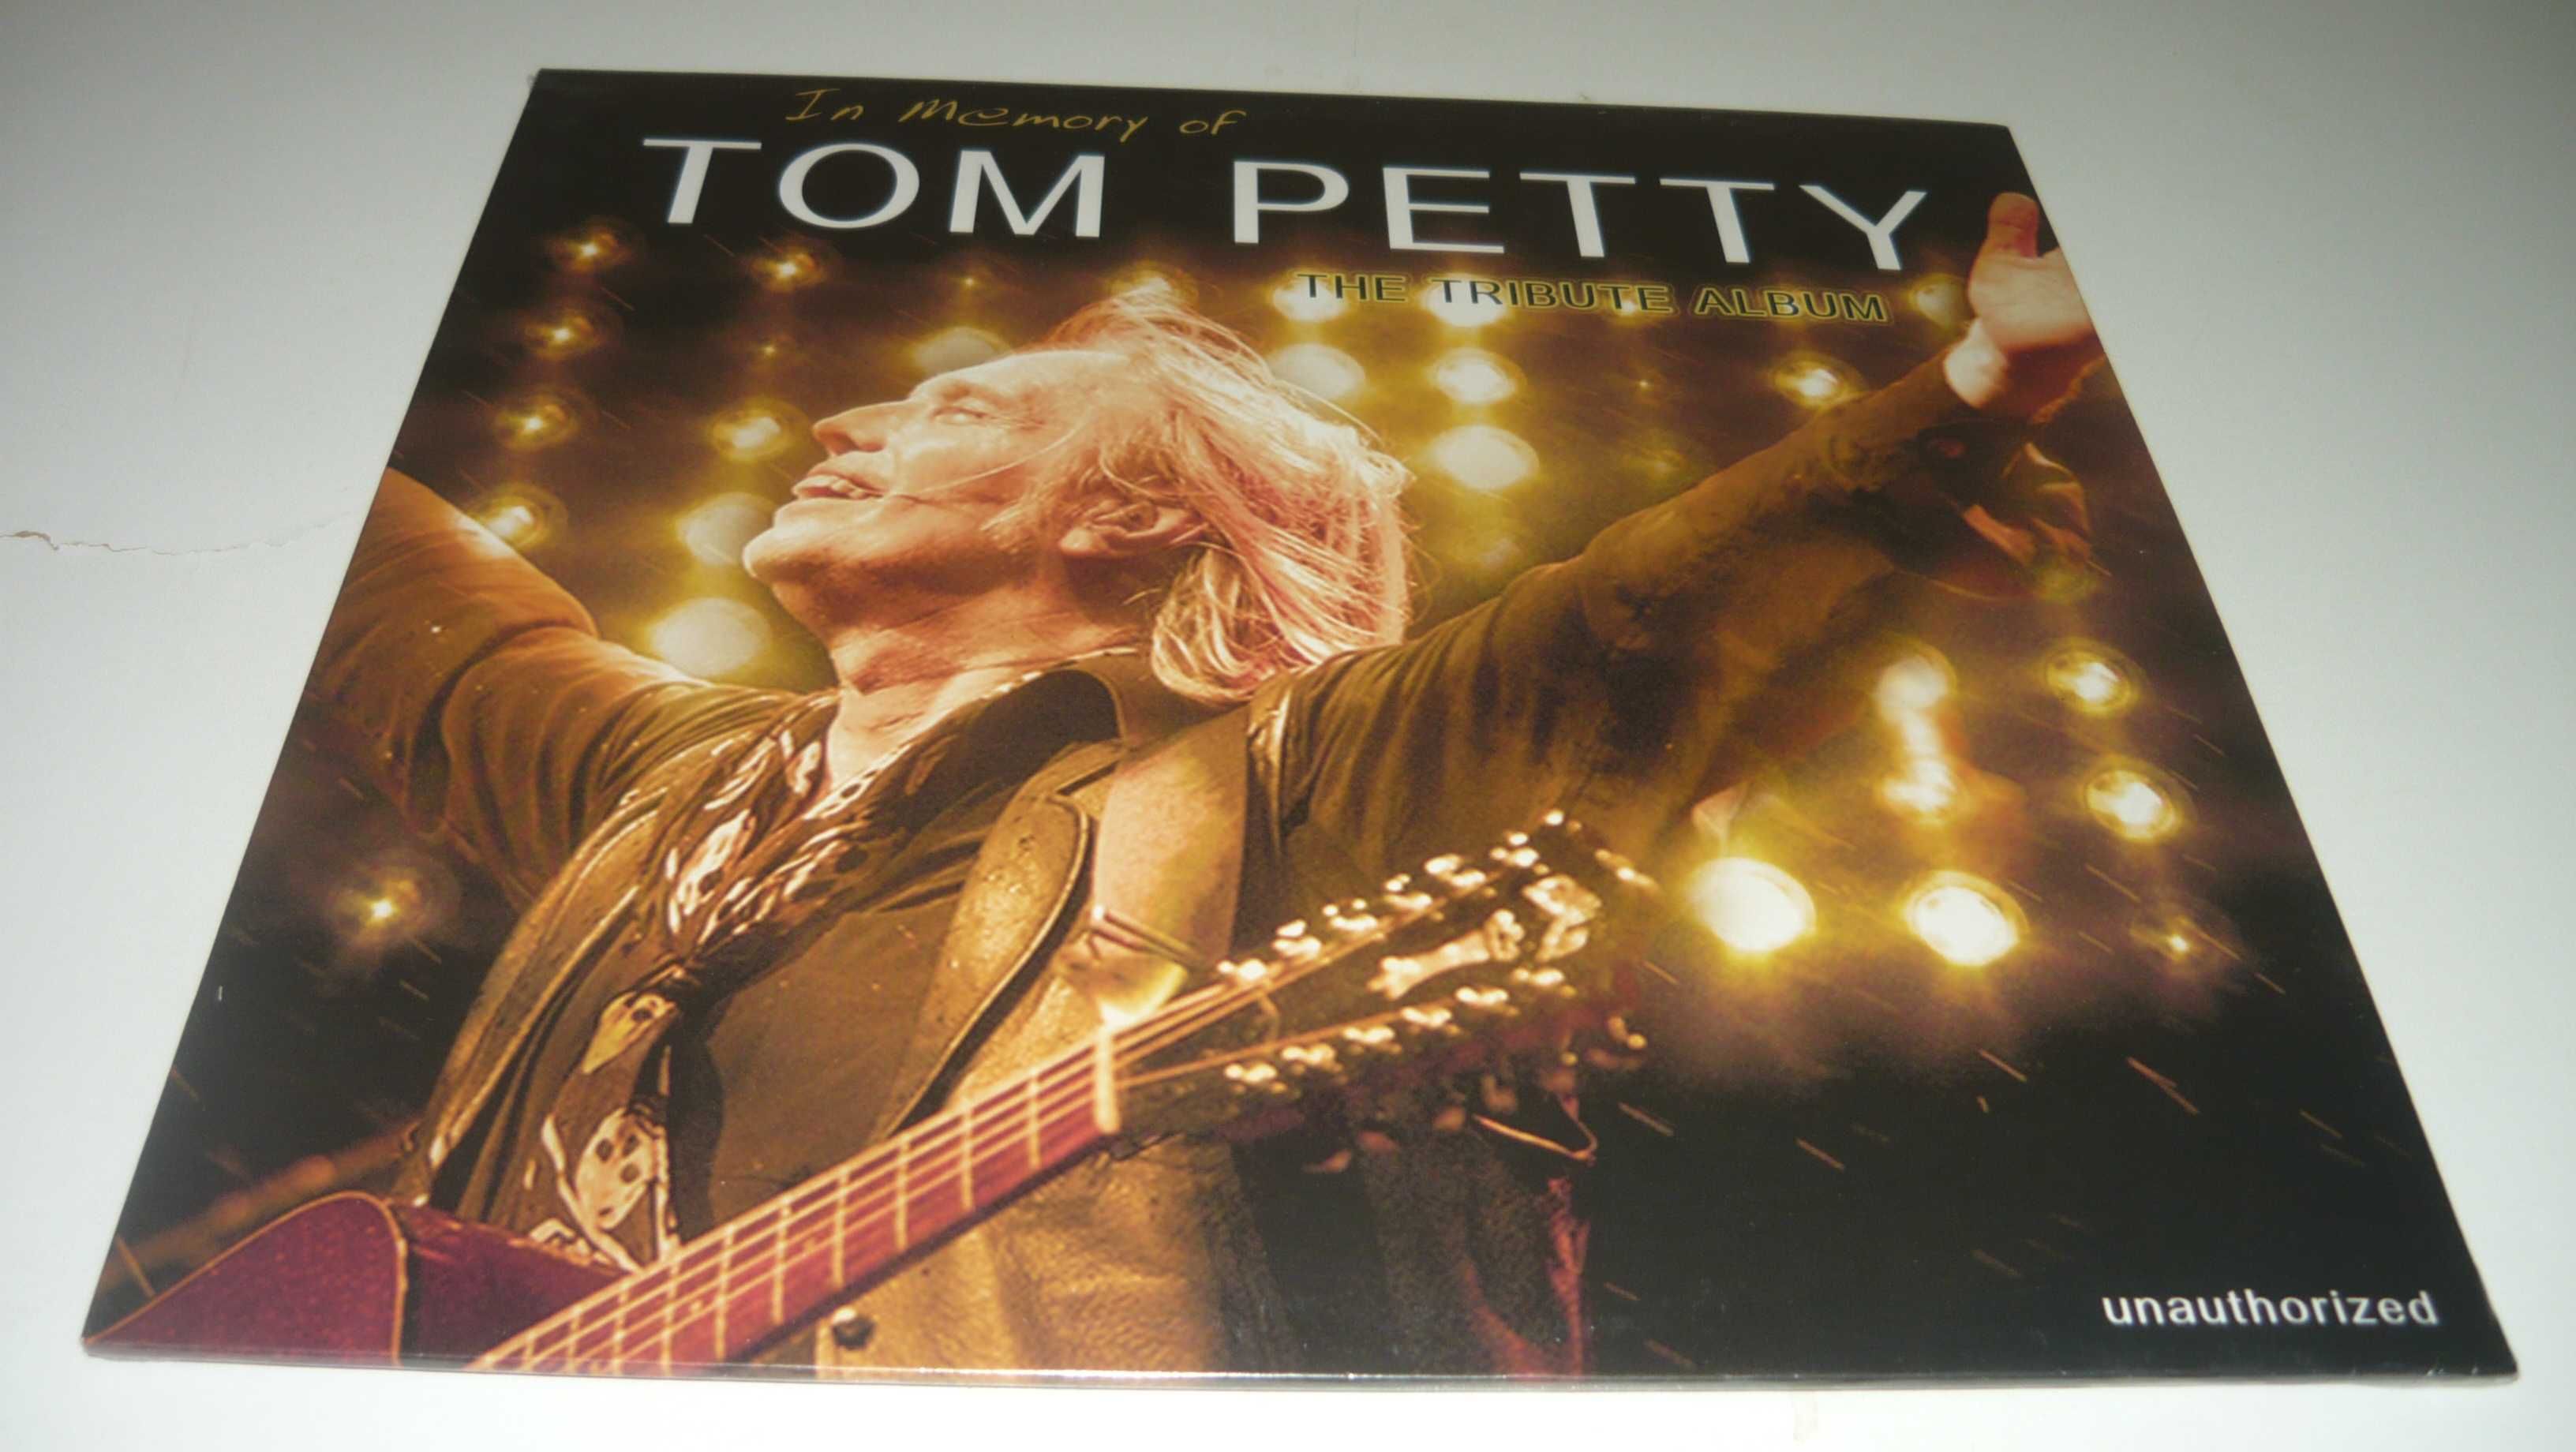 I8n Memory of Tom Petty LP